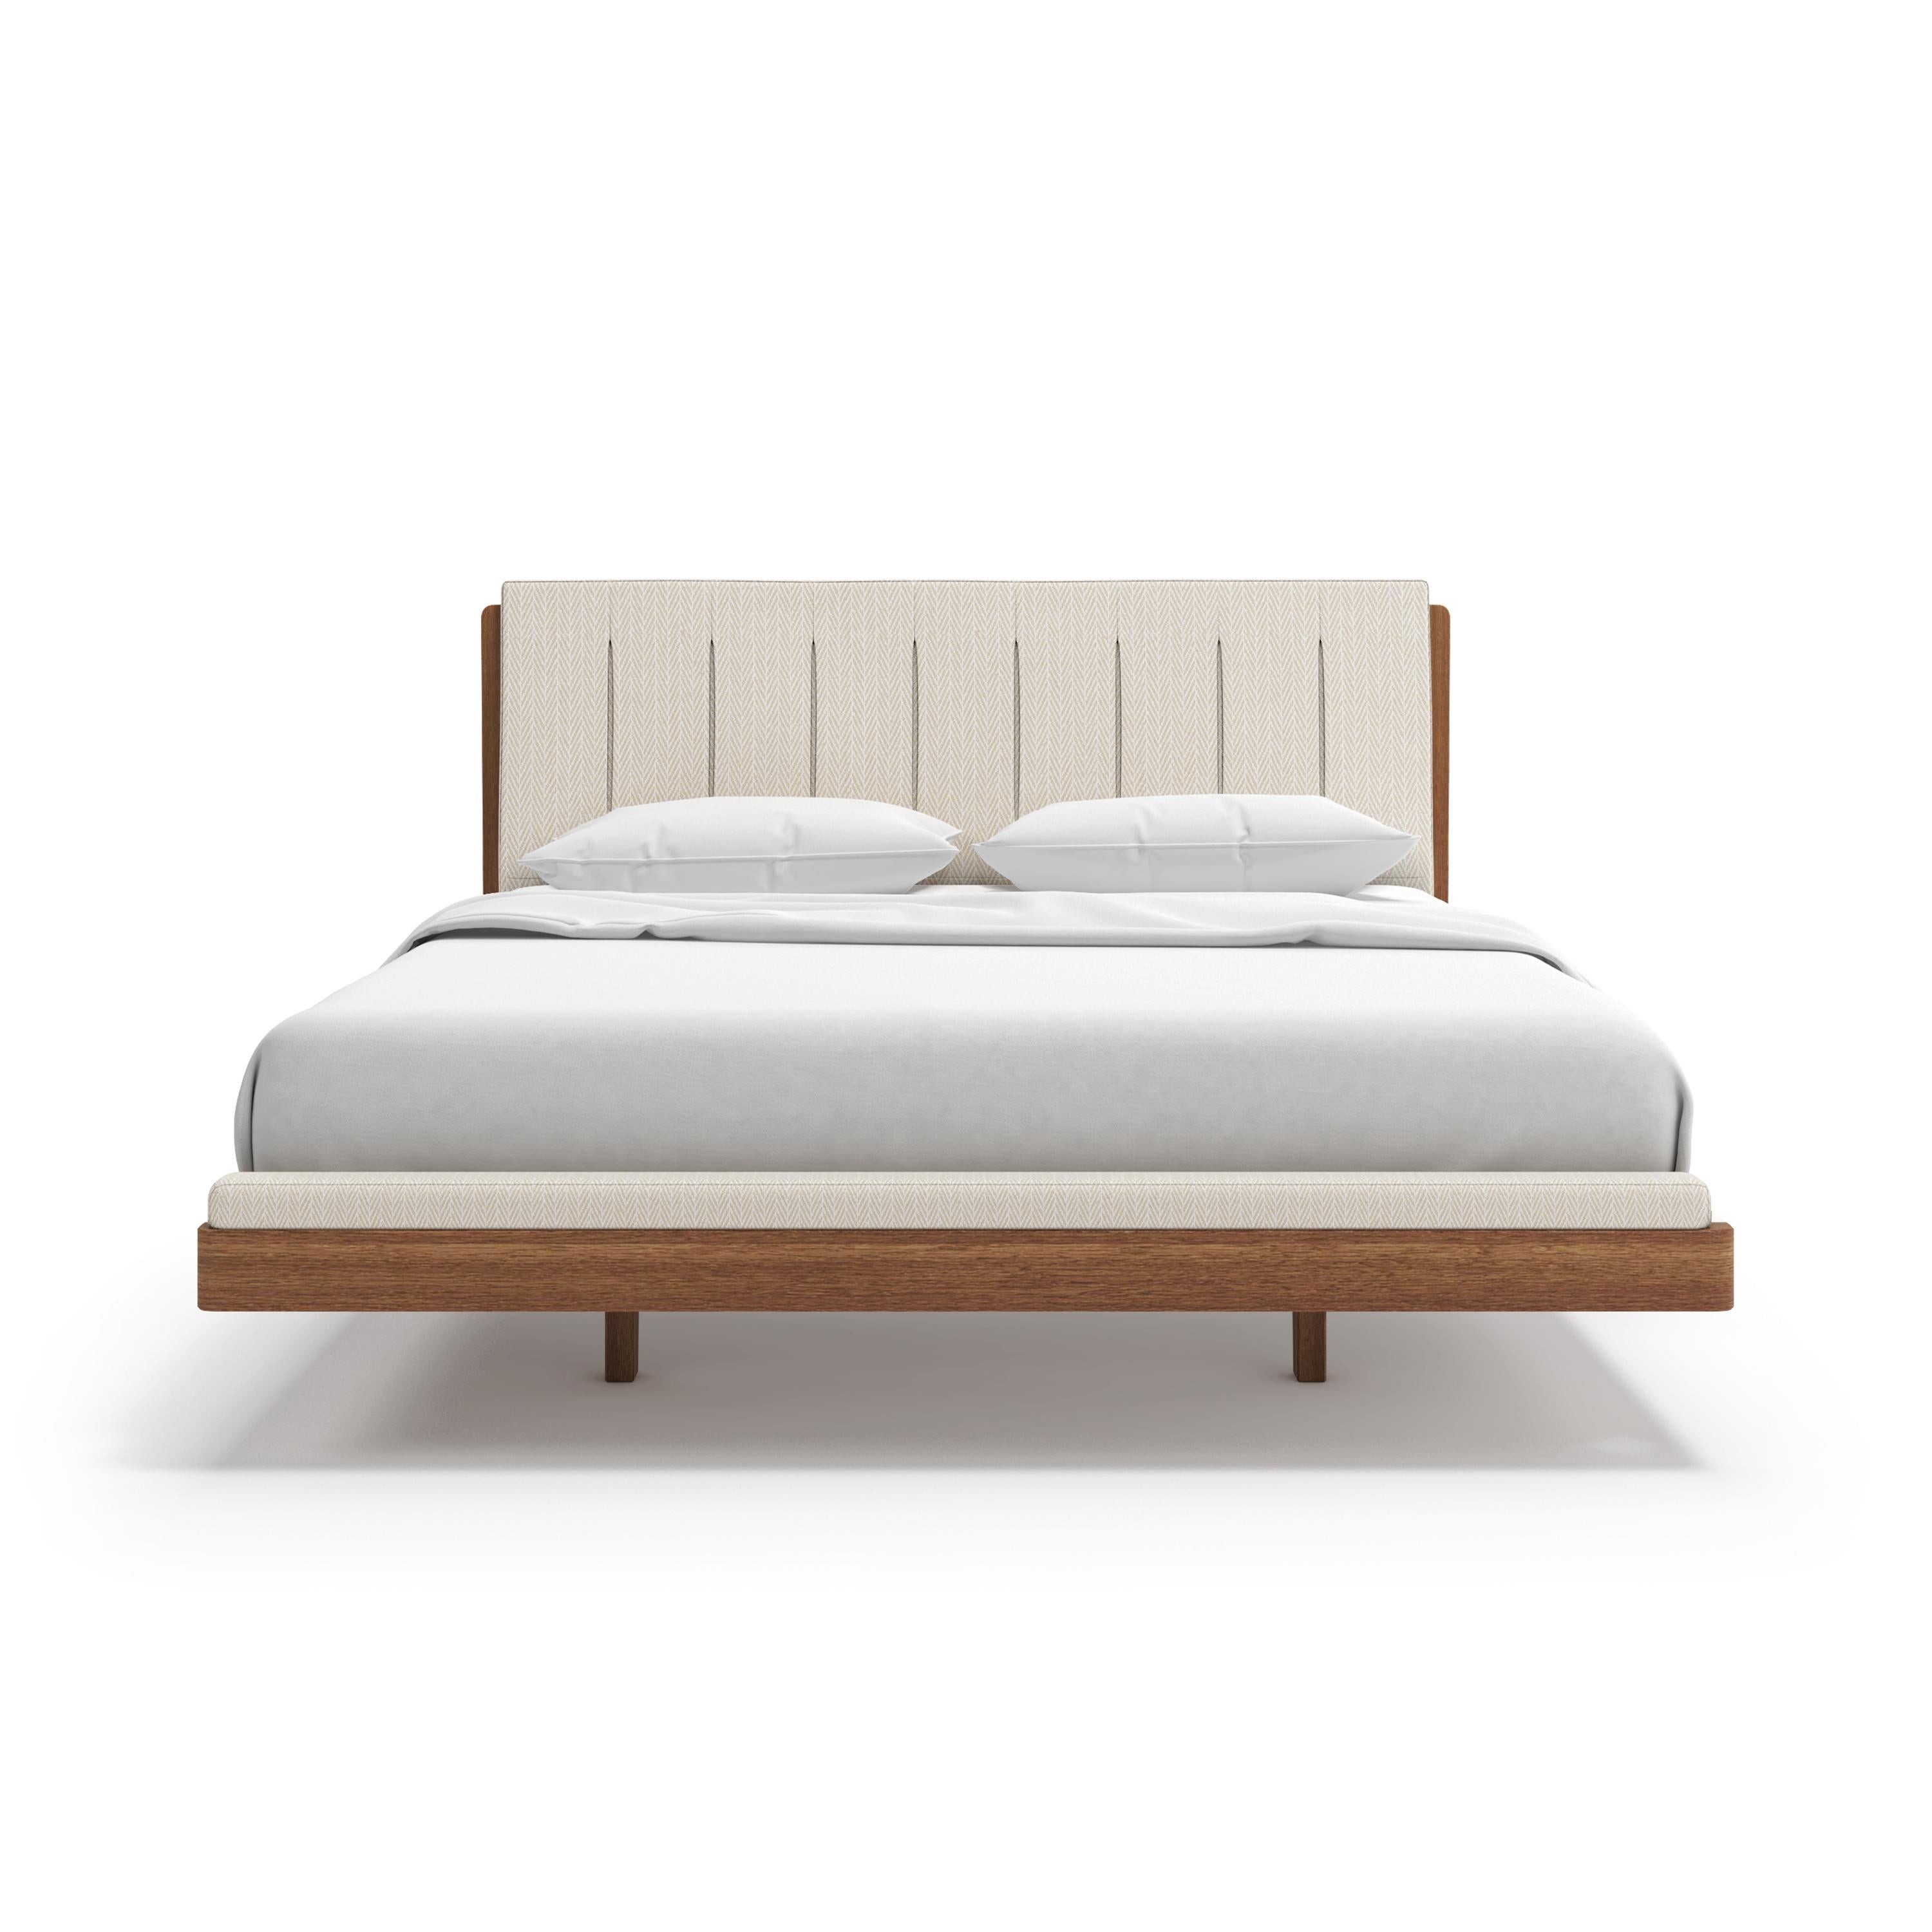 Erleben Sie mit dem Talvi-Bett überlegenen Komfort und Handwerkskunst! Dieses schöne Bett aus massivem Eichen- oder Teakholz verleiht Ihrem Zimmer einen Hauch von Schönheit. Genießen Sie einen außergewöhnlichen Schlaf und stilvolles Design.

Alle